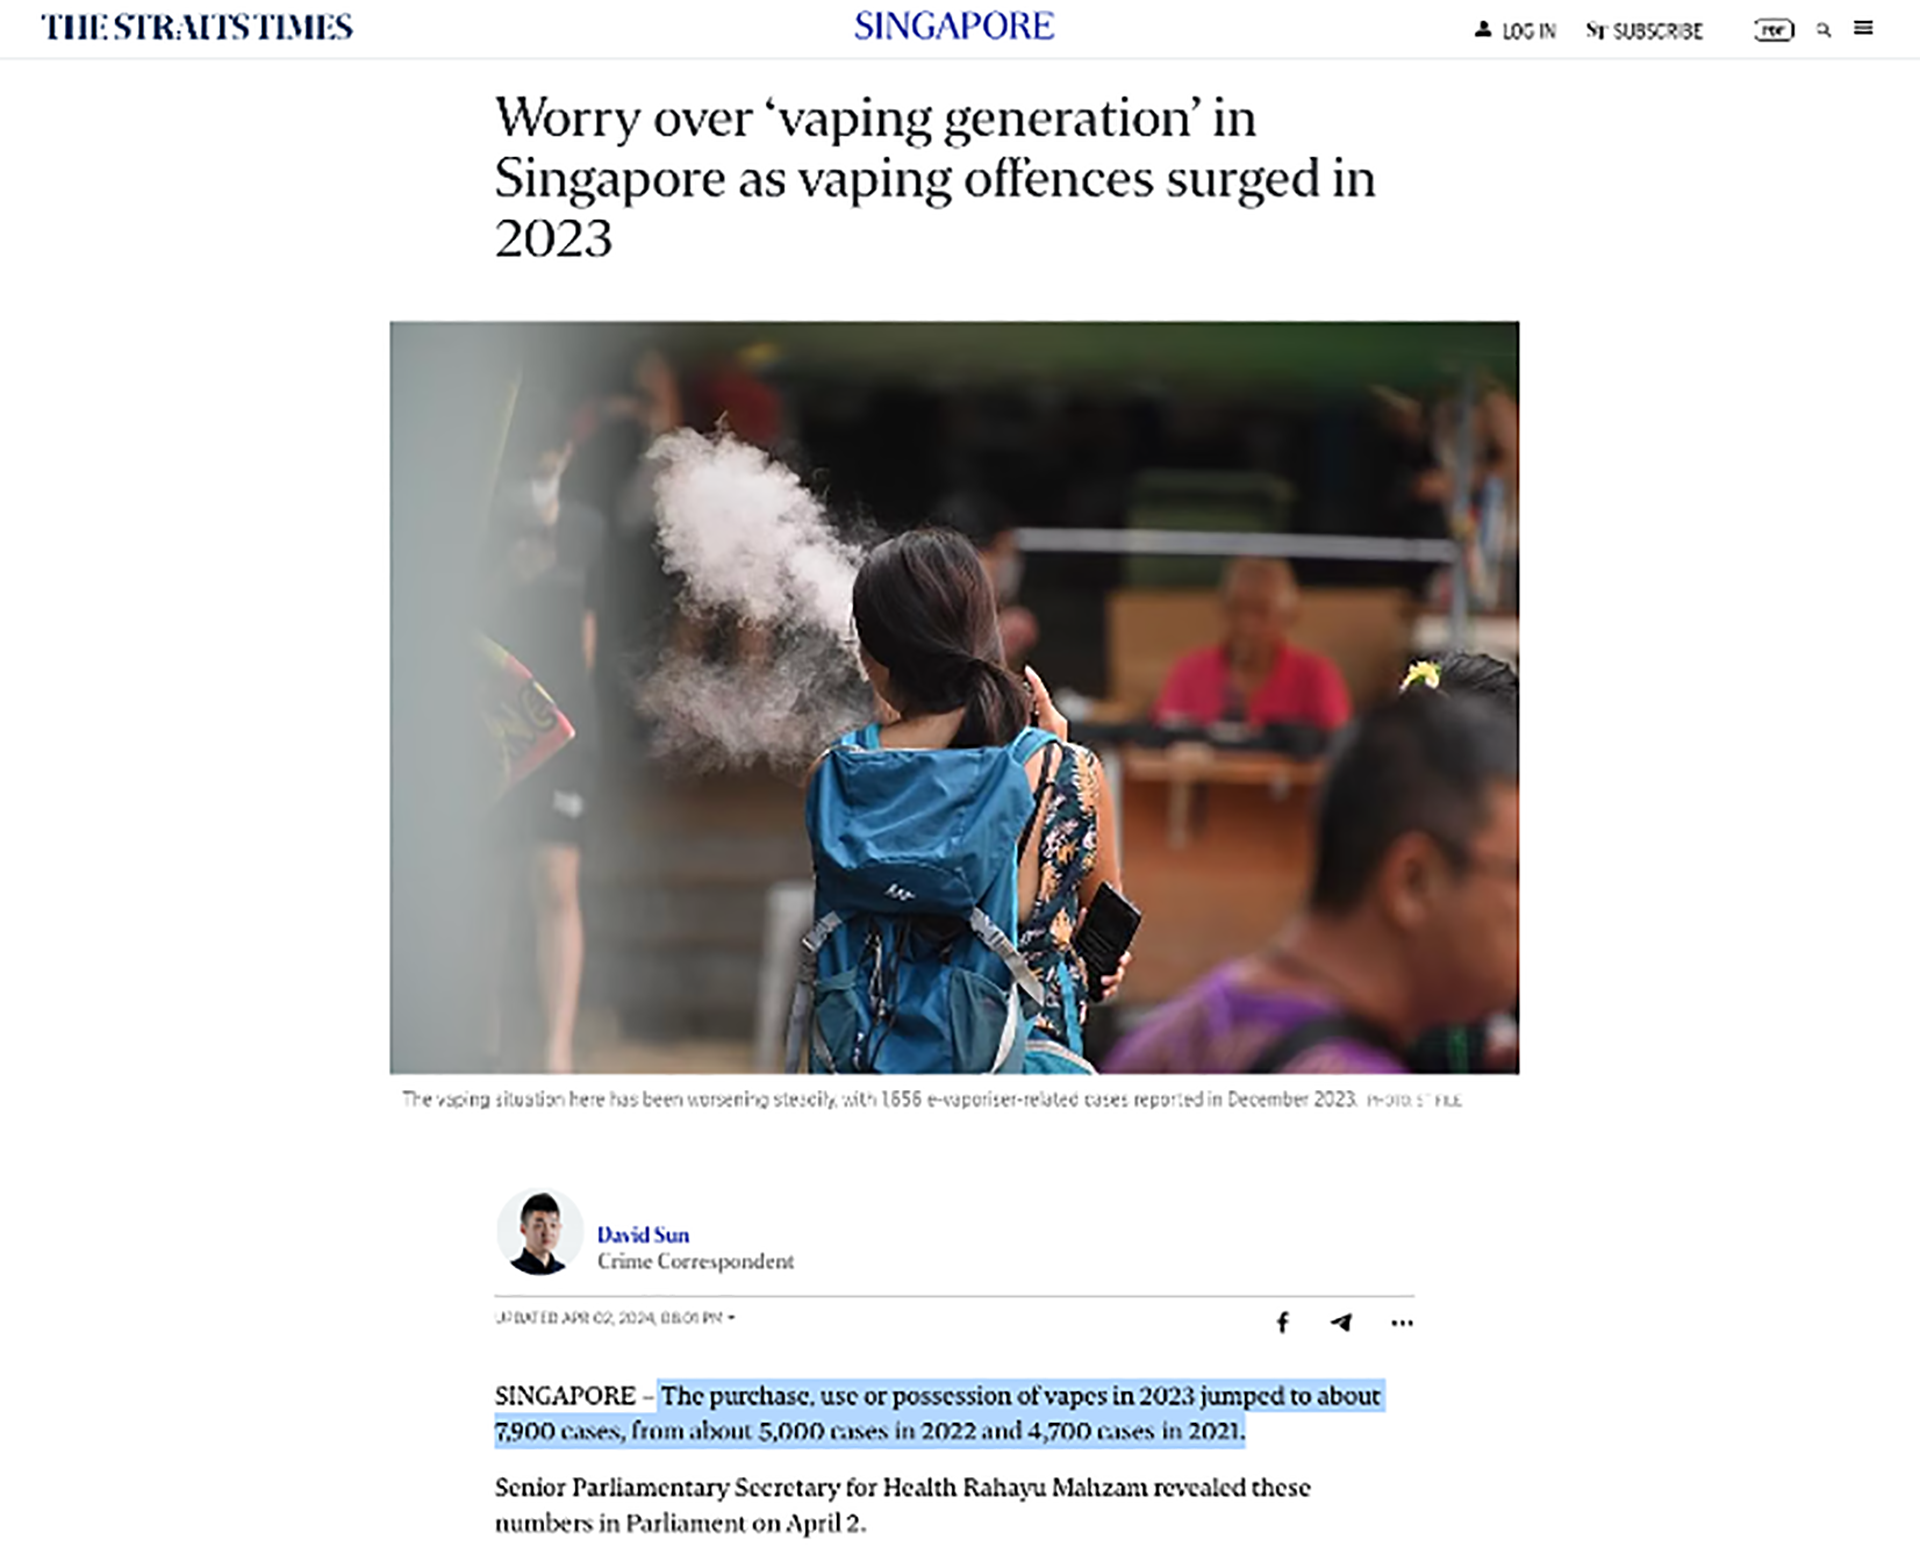 Số lượng vi phạm liên quan đến thuốc lá mới tại Singapore tăng cao bất chấp chế tài nghiêm ngặt. Nguồn: The Straits Times